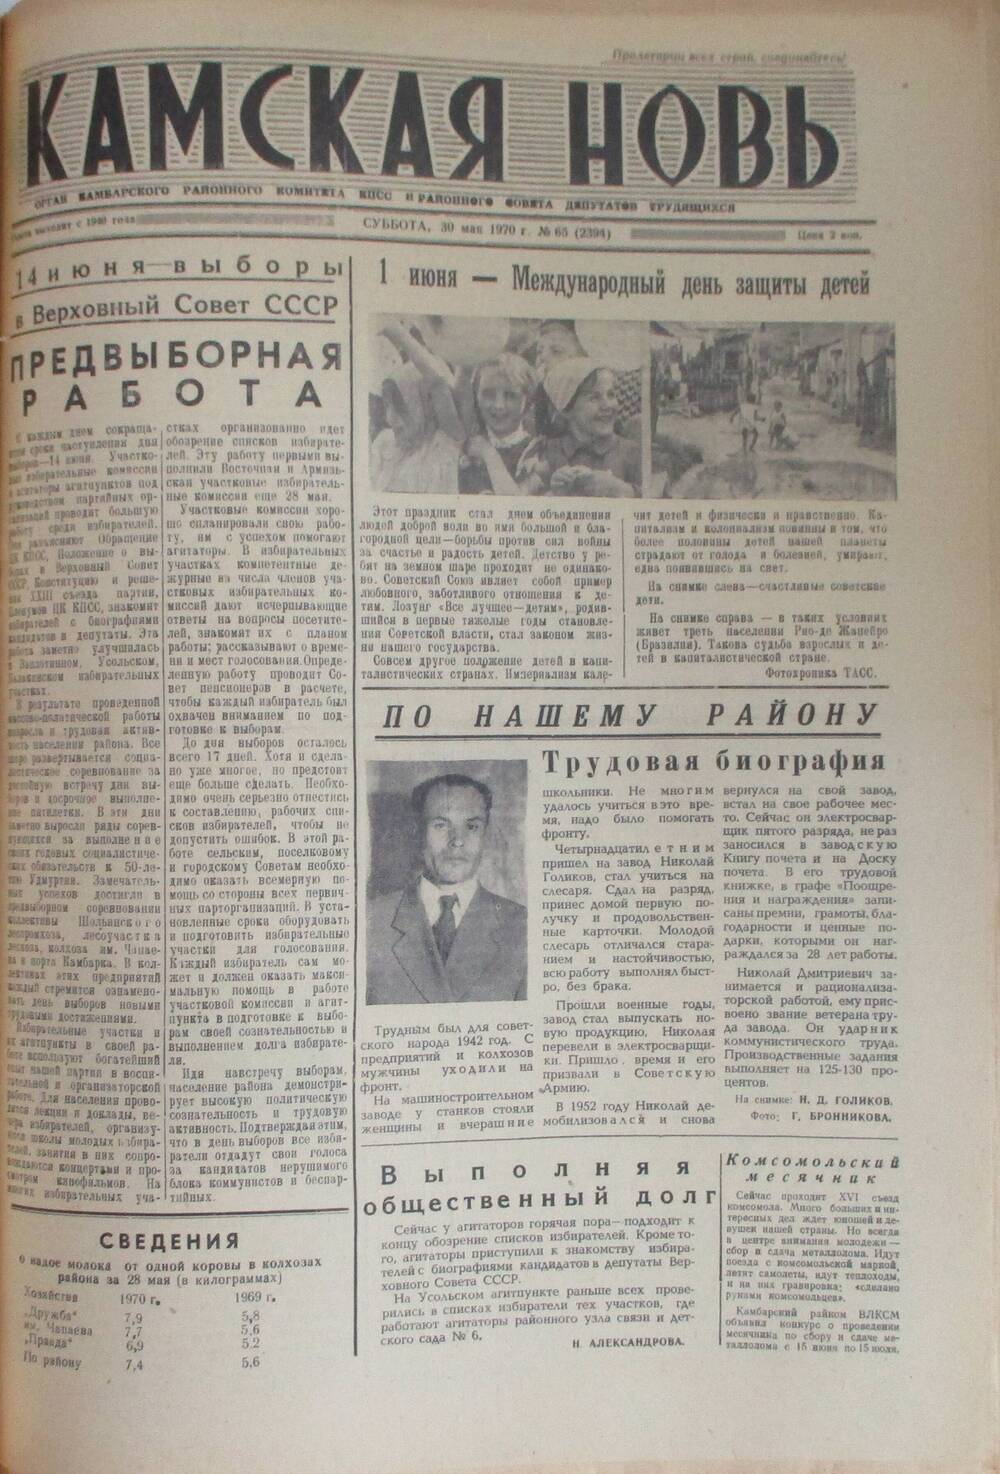 Газеты Камская новь за 1970 год. с №1 по №83., №65.